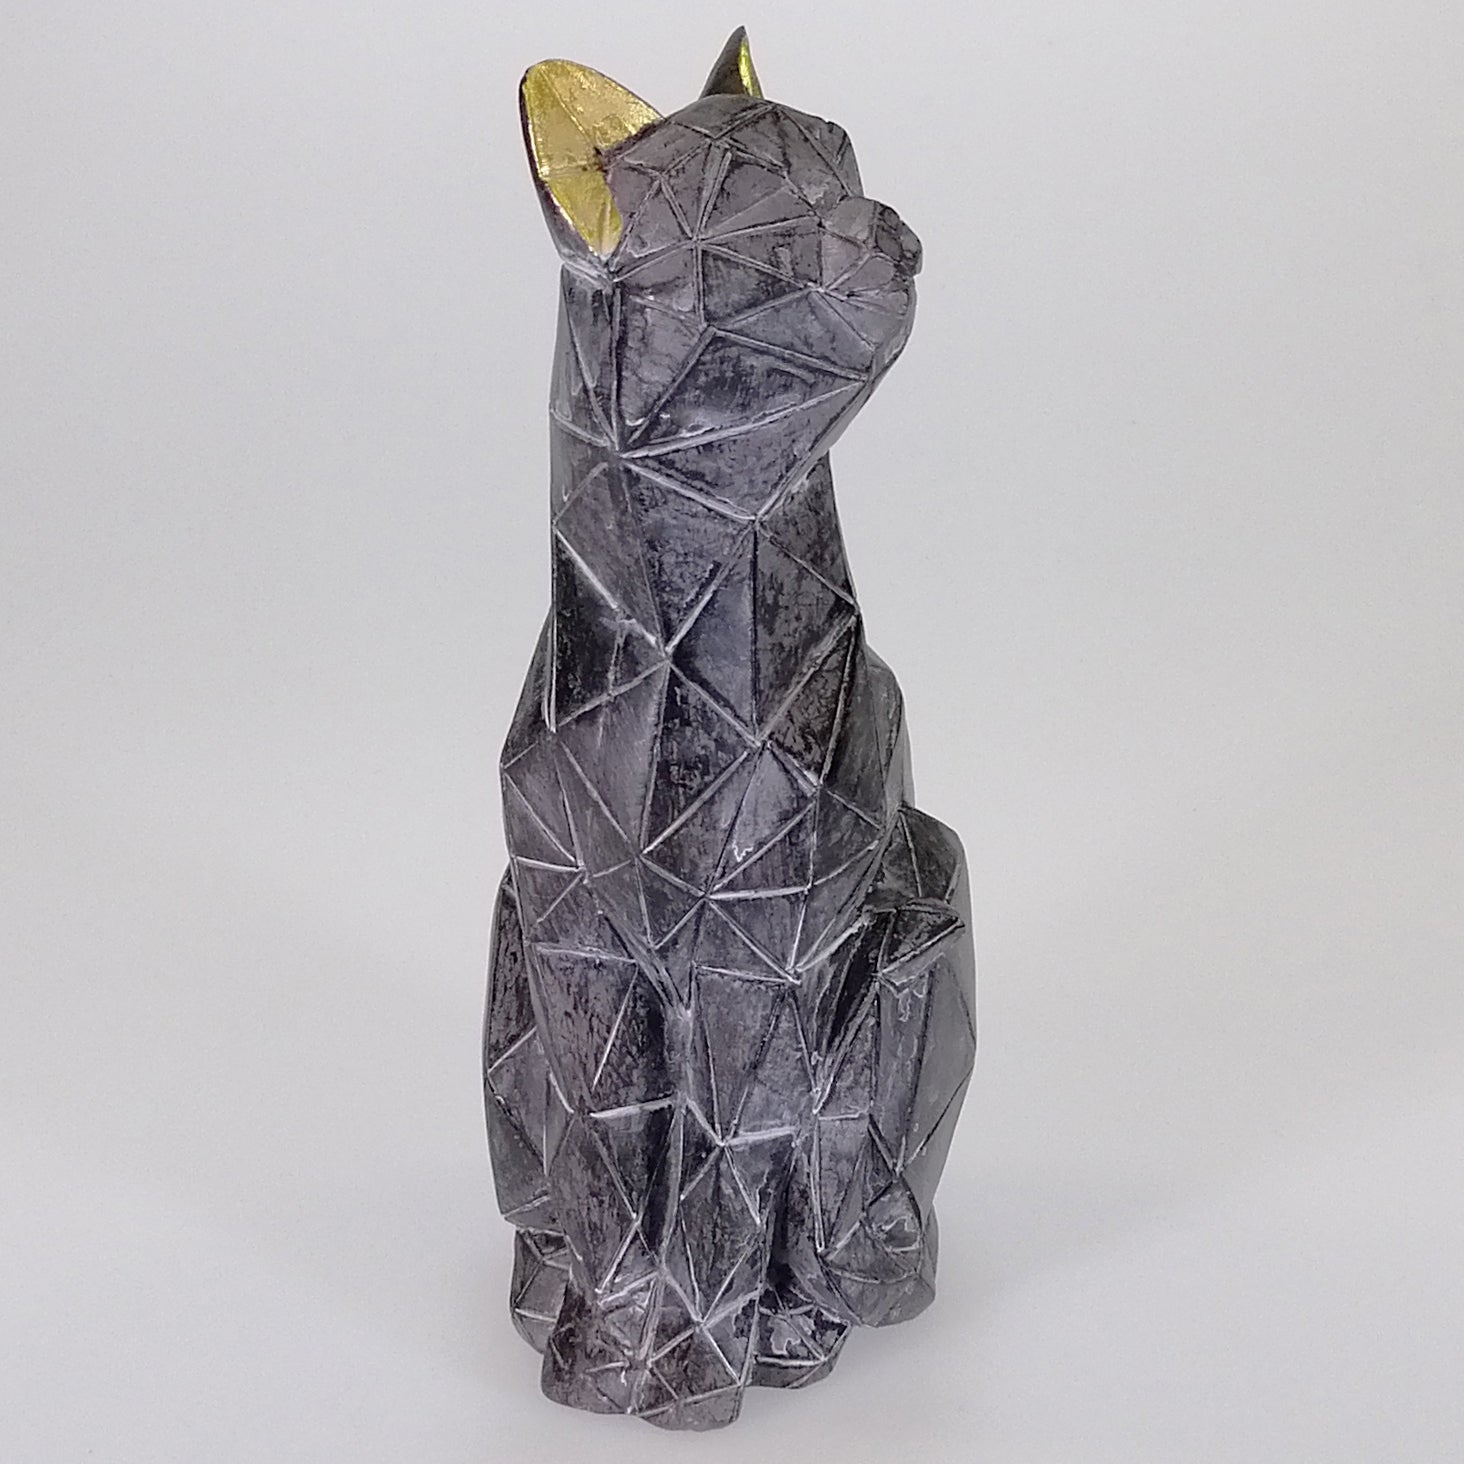 Geometric Black Cat Ornament - Small